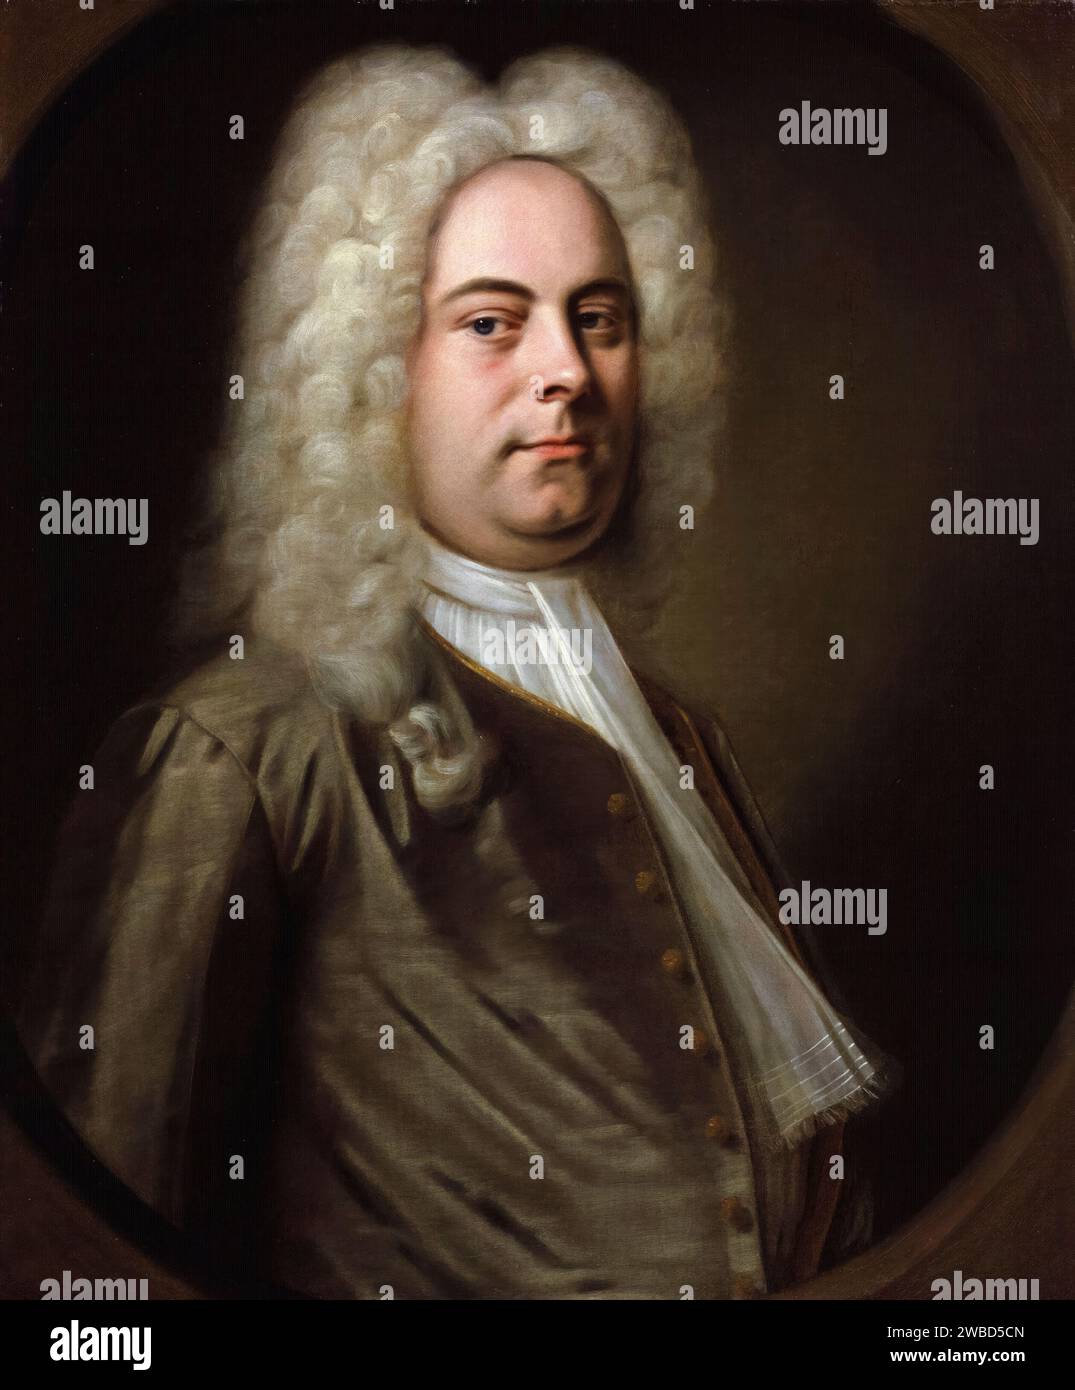 George Frideric Handel (1685-1759), compositeur baroque germano-britannique, portrait à l'huile sur toile de Balthasar Denner, 1726-1728 Banque D'Images